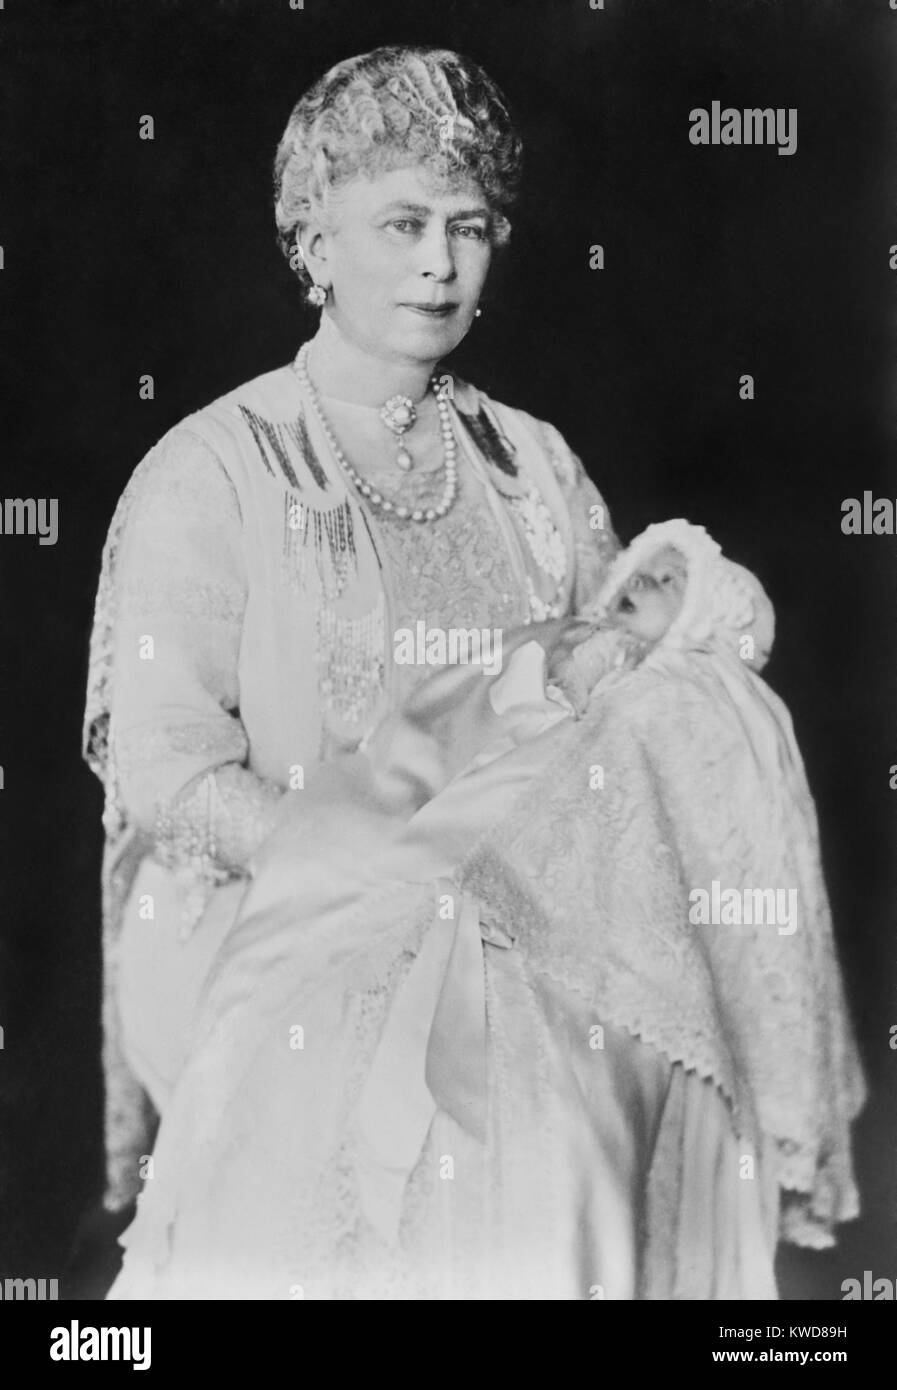 queen-mary-sosteniendo-su-nieta-elizabeth-de-york-en-1926-en-1953-el-bebe-se-convirtio-en-la-reina-isabel-ii-bsloc-2015-17-185-kwd89h.jpg